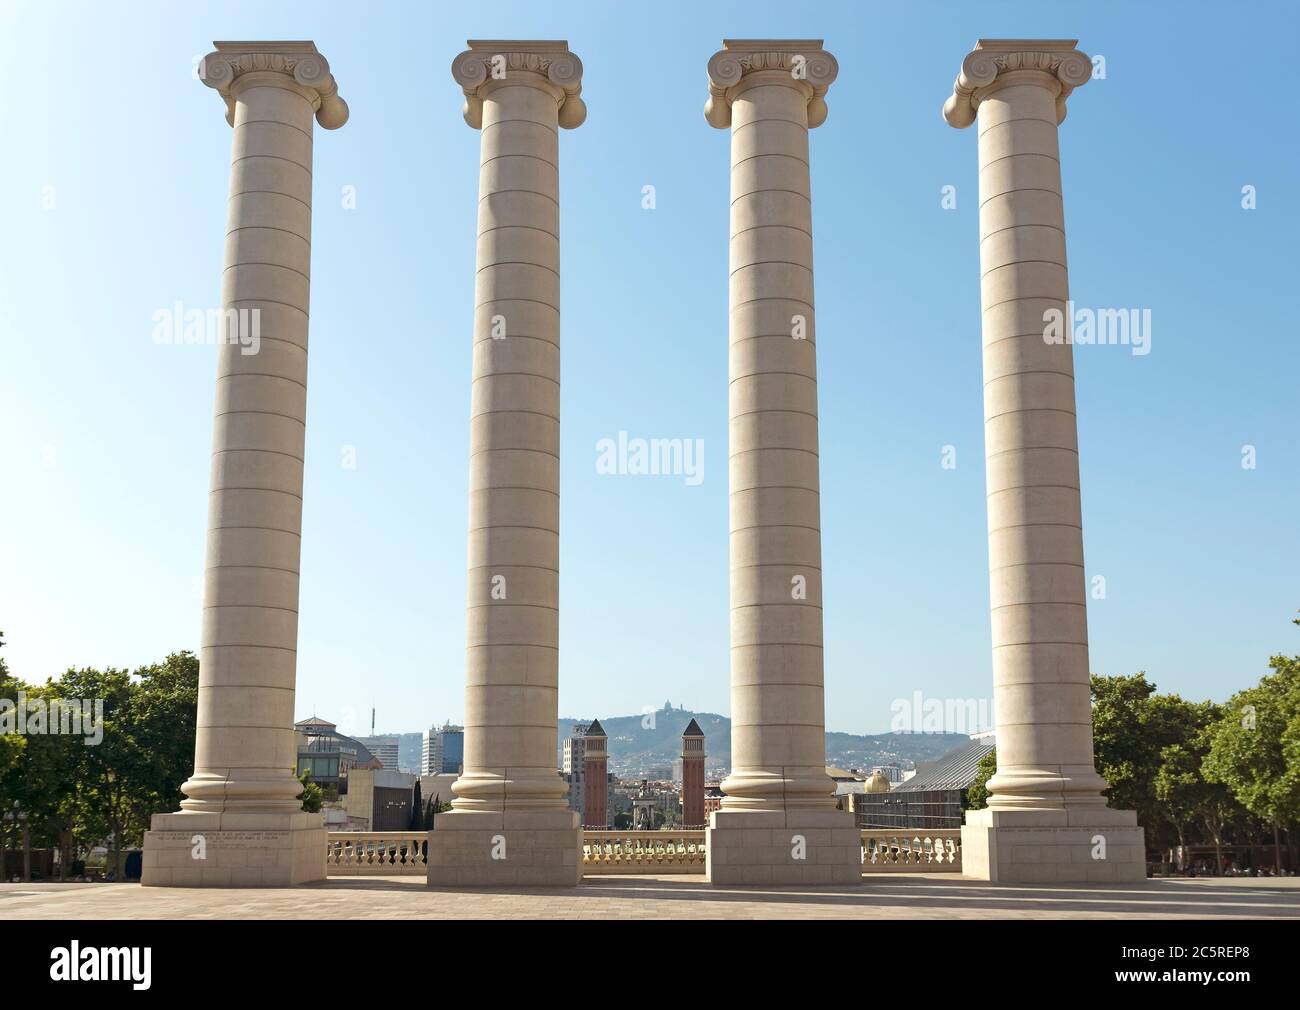 BARCELONA, SPANIEN - 6. JULI 2015: Die vier Säulen, von Josep Puig i Cadafalch erstellt, ist auf dem Platz vor dem Museu Nacional d'Art de Catalunya, B Stockfoto